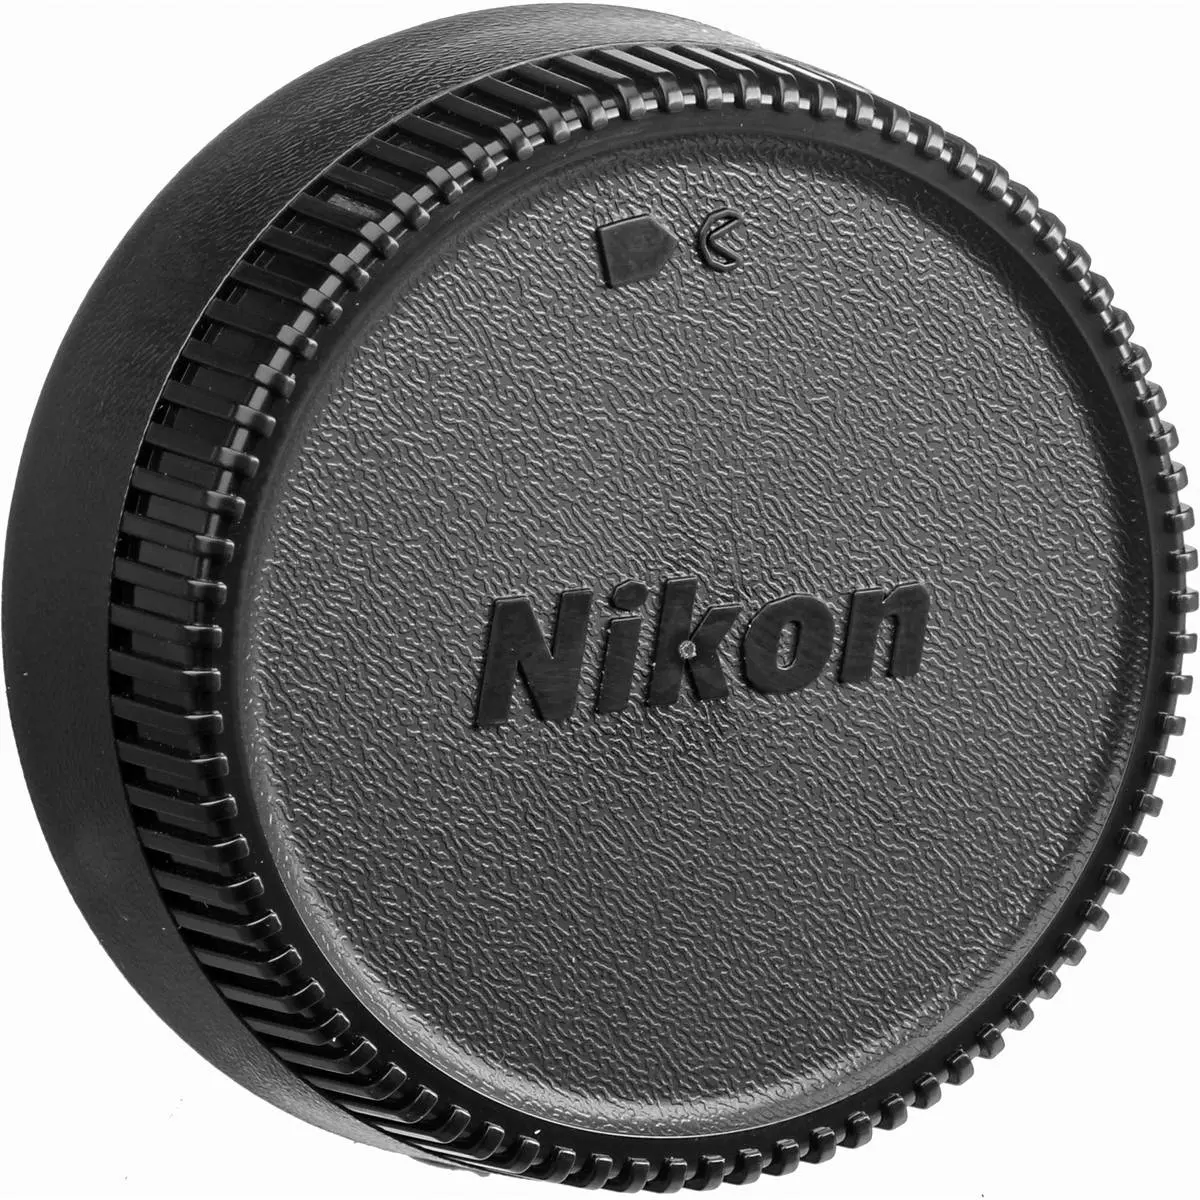 4. Nikon NIKKOR AF-S 35mm f/1.8G F1.8 G DX